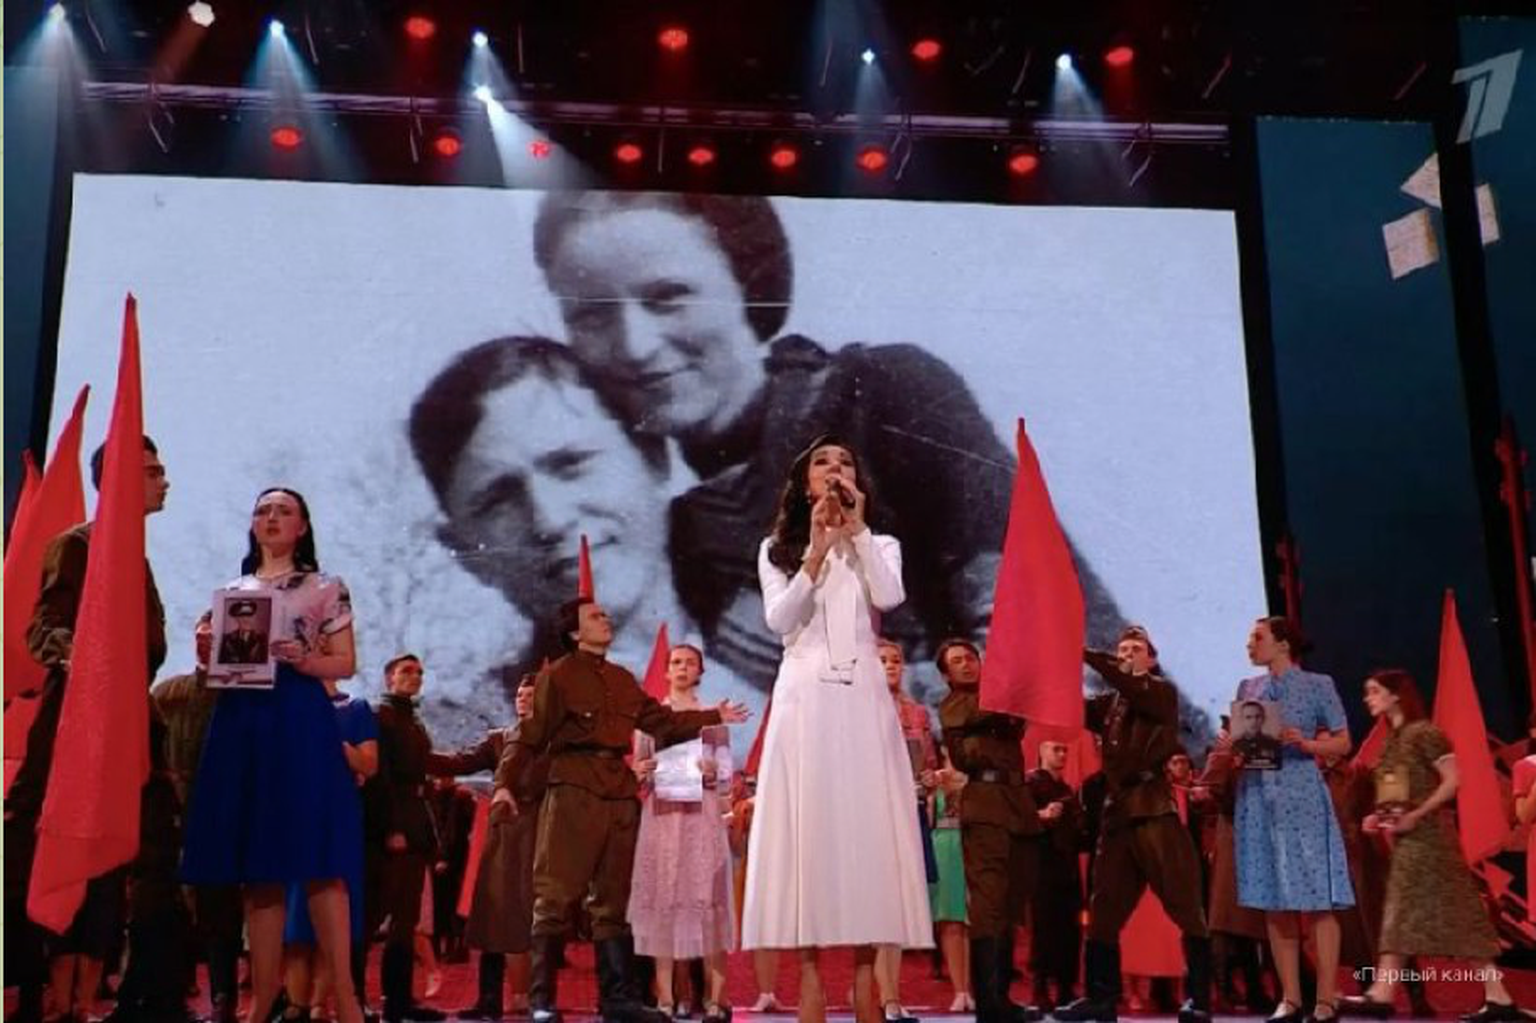 Скриншот из трансляции концерта на Первом канале.